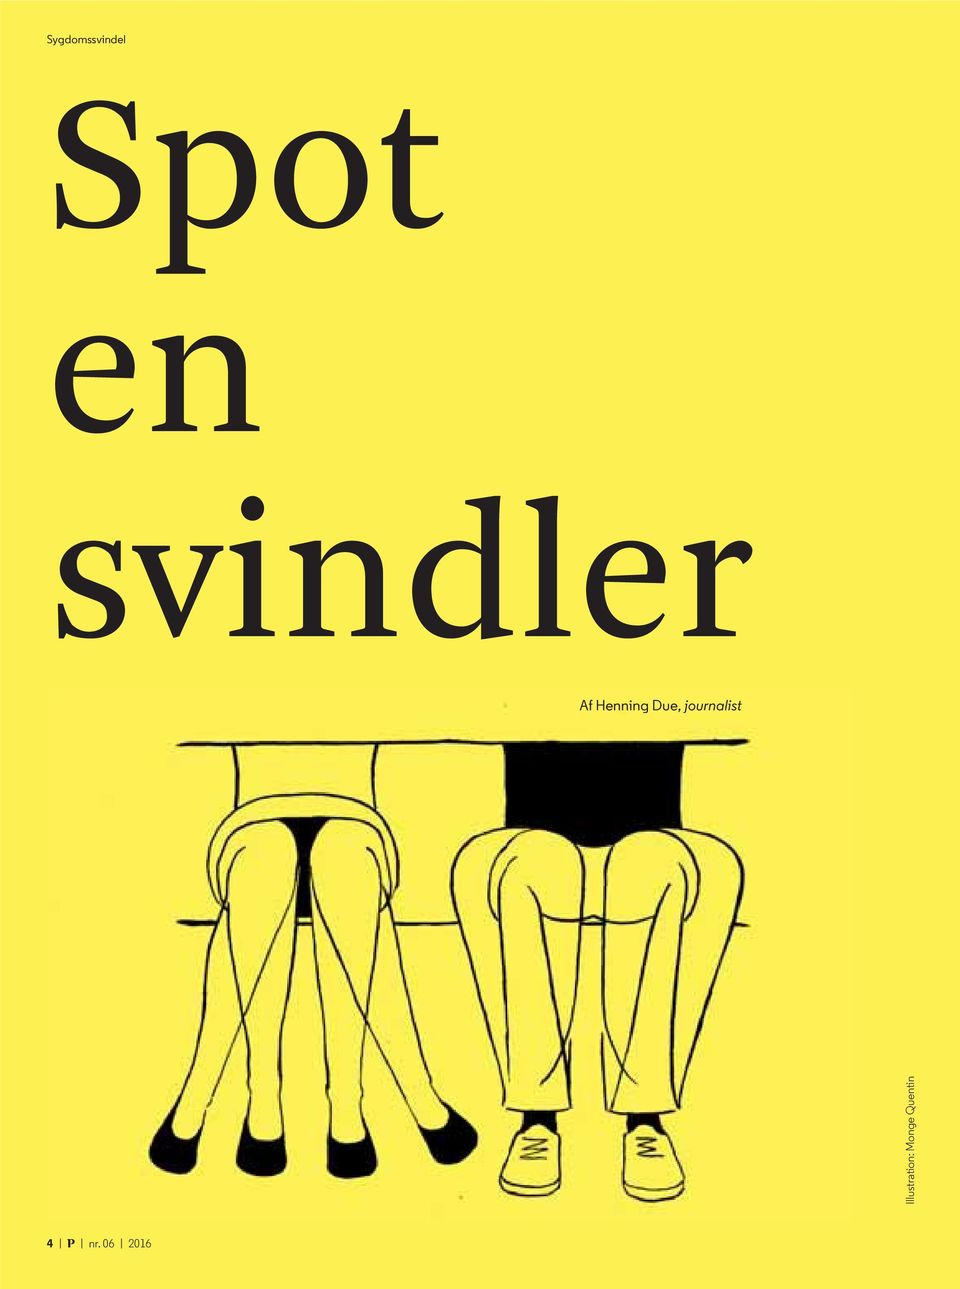 Sygdomssvindel. Spot en svindler. Af Henning Due, journalist. Illustration:  Monge Quentin - PDF Free Download